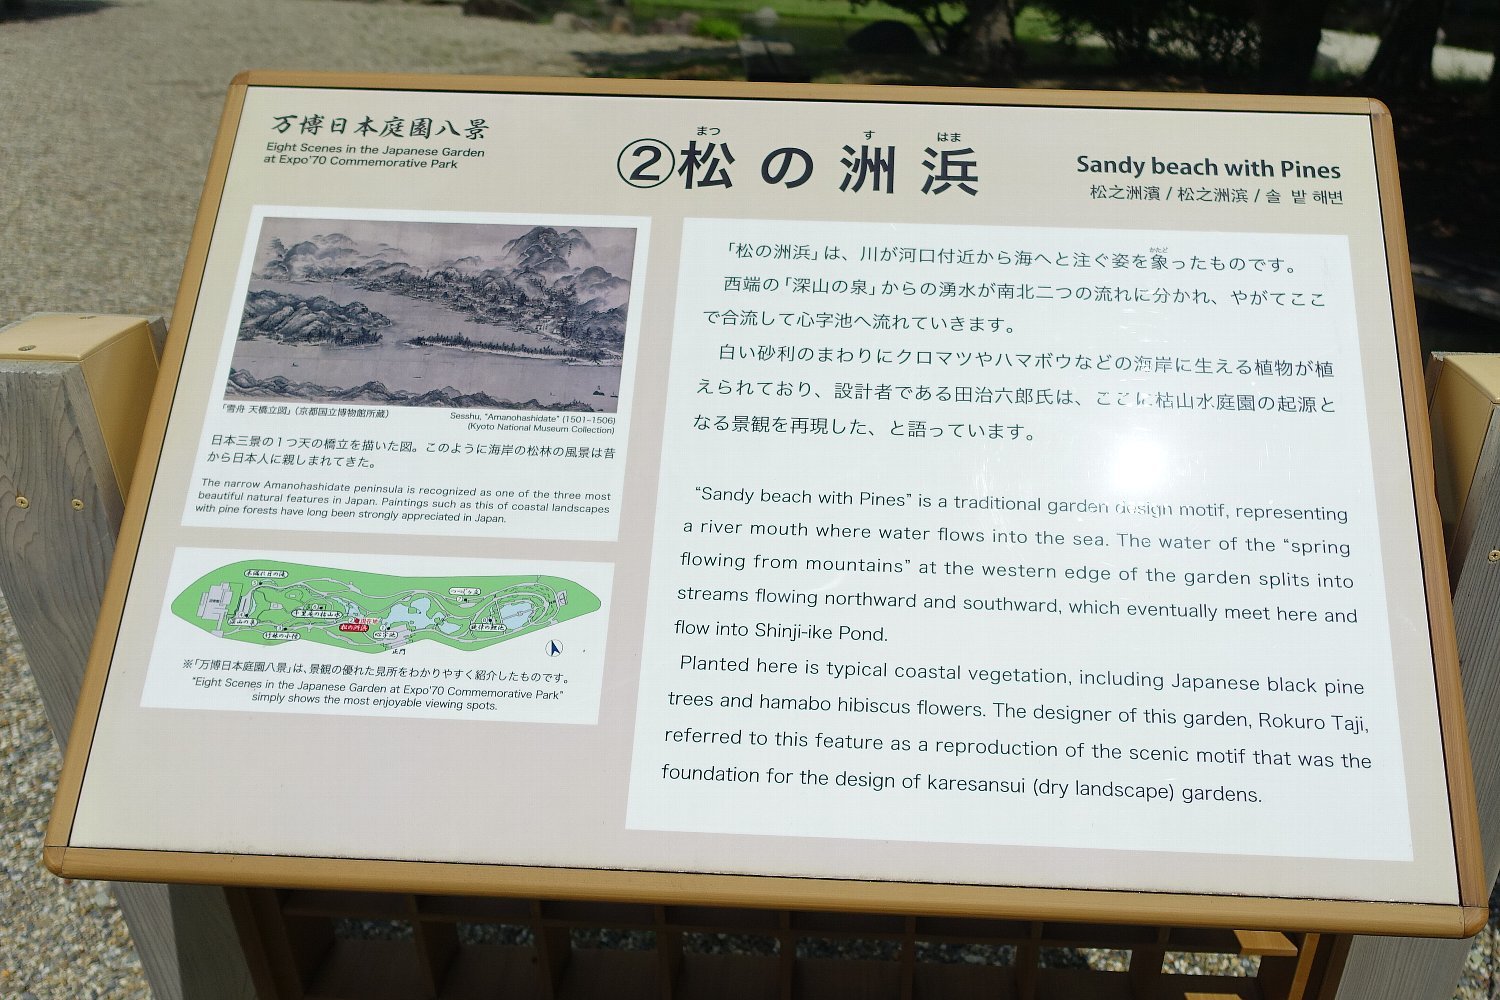 万博記念公園 日本庭園 松の洲浜 レトロな建物を訪ねて